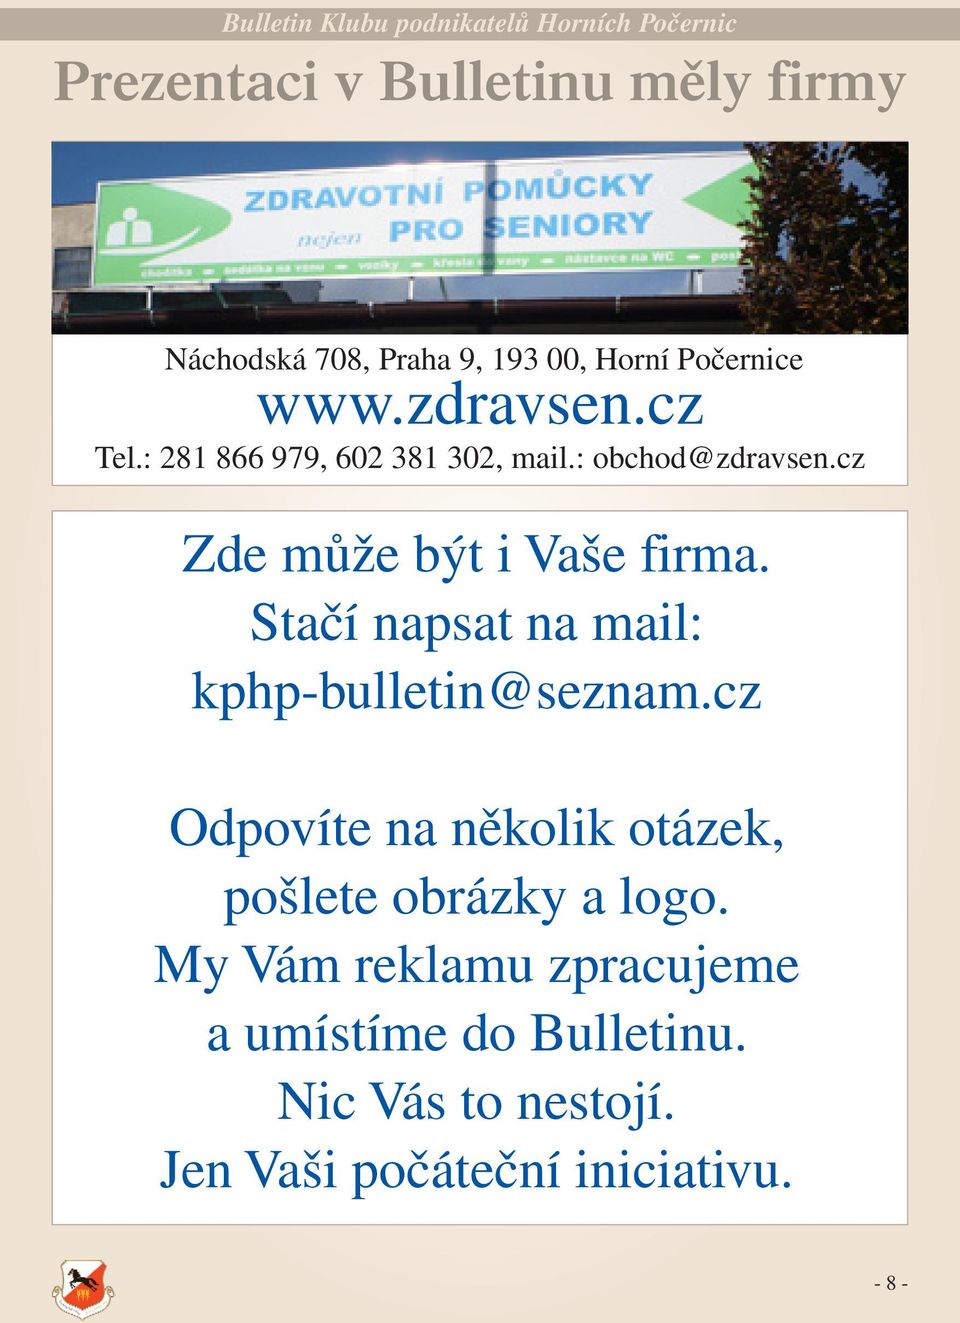 Stačí napsat na mail: kphp-bulletin@seznam.cz Odpovíte na několik otázek, pošlete obrázky a logo.